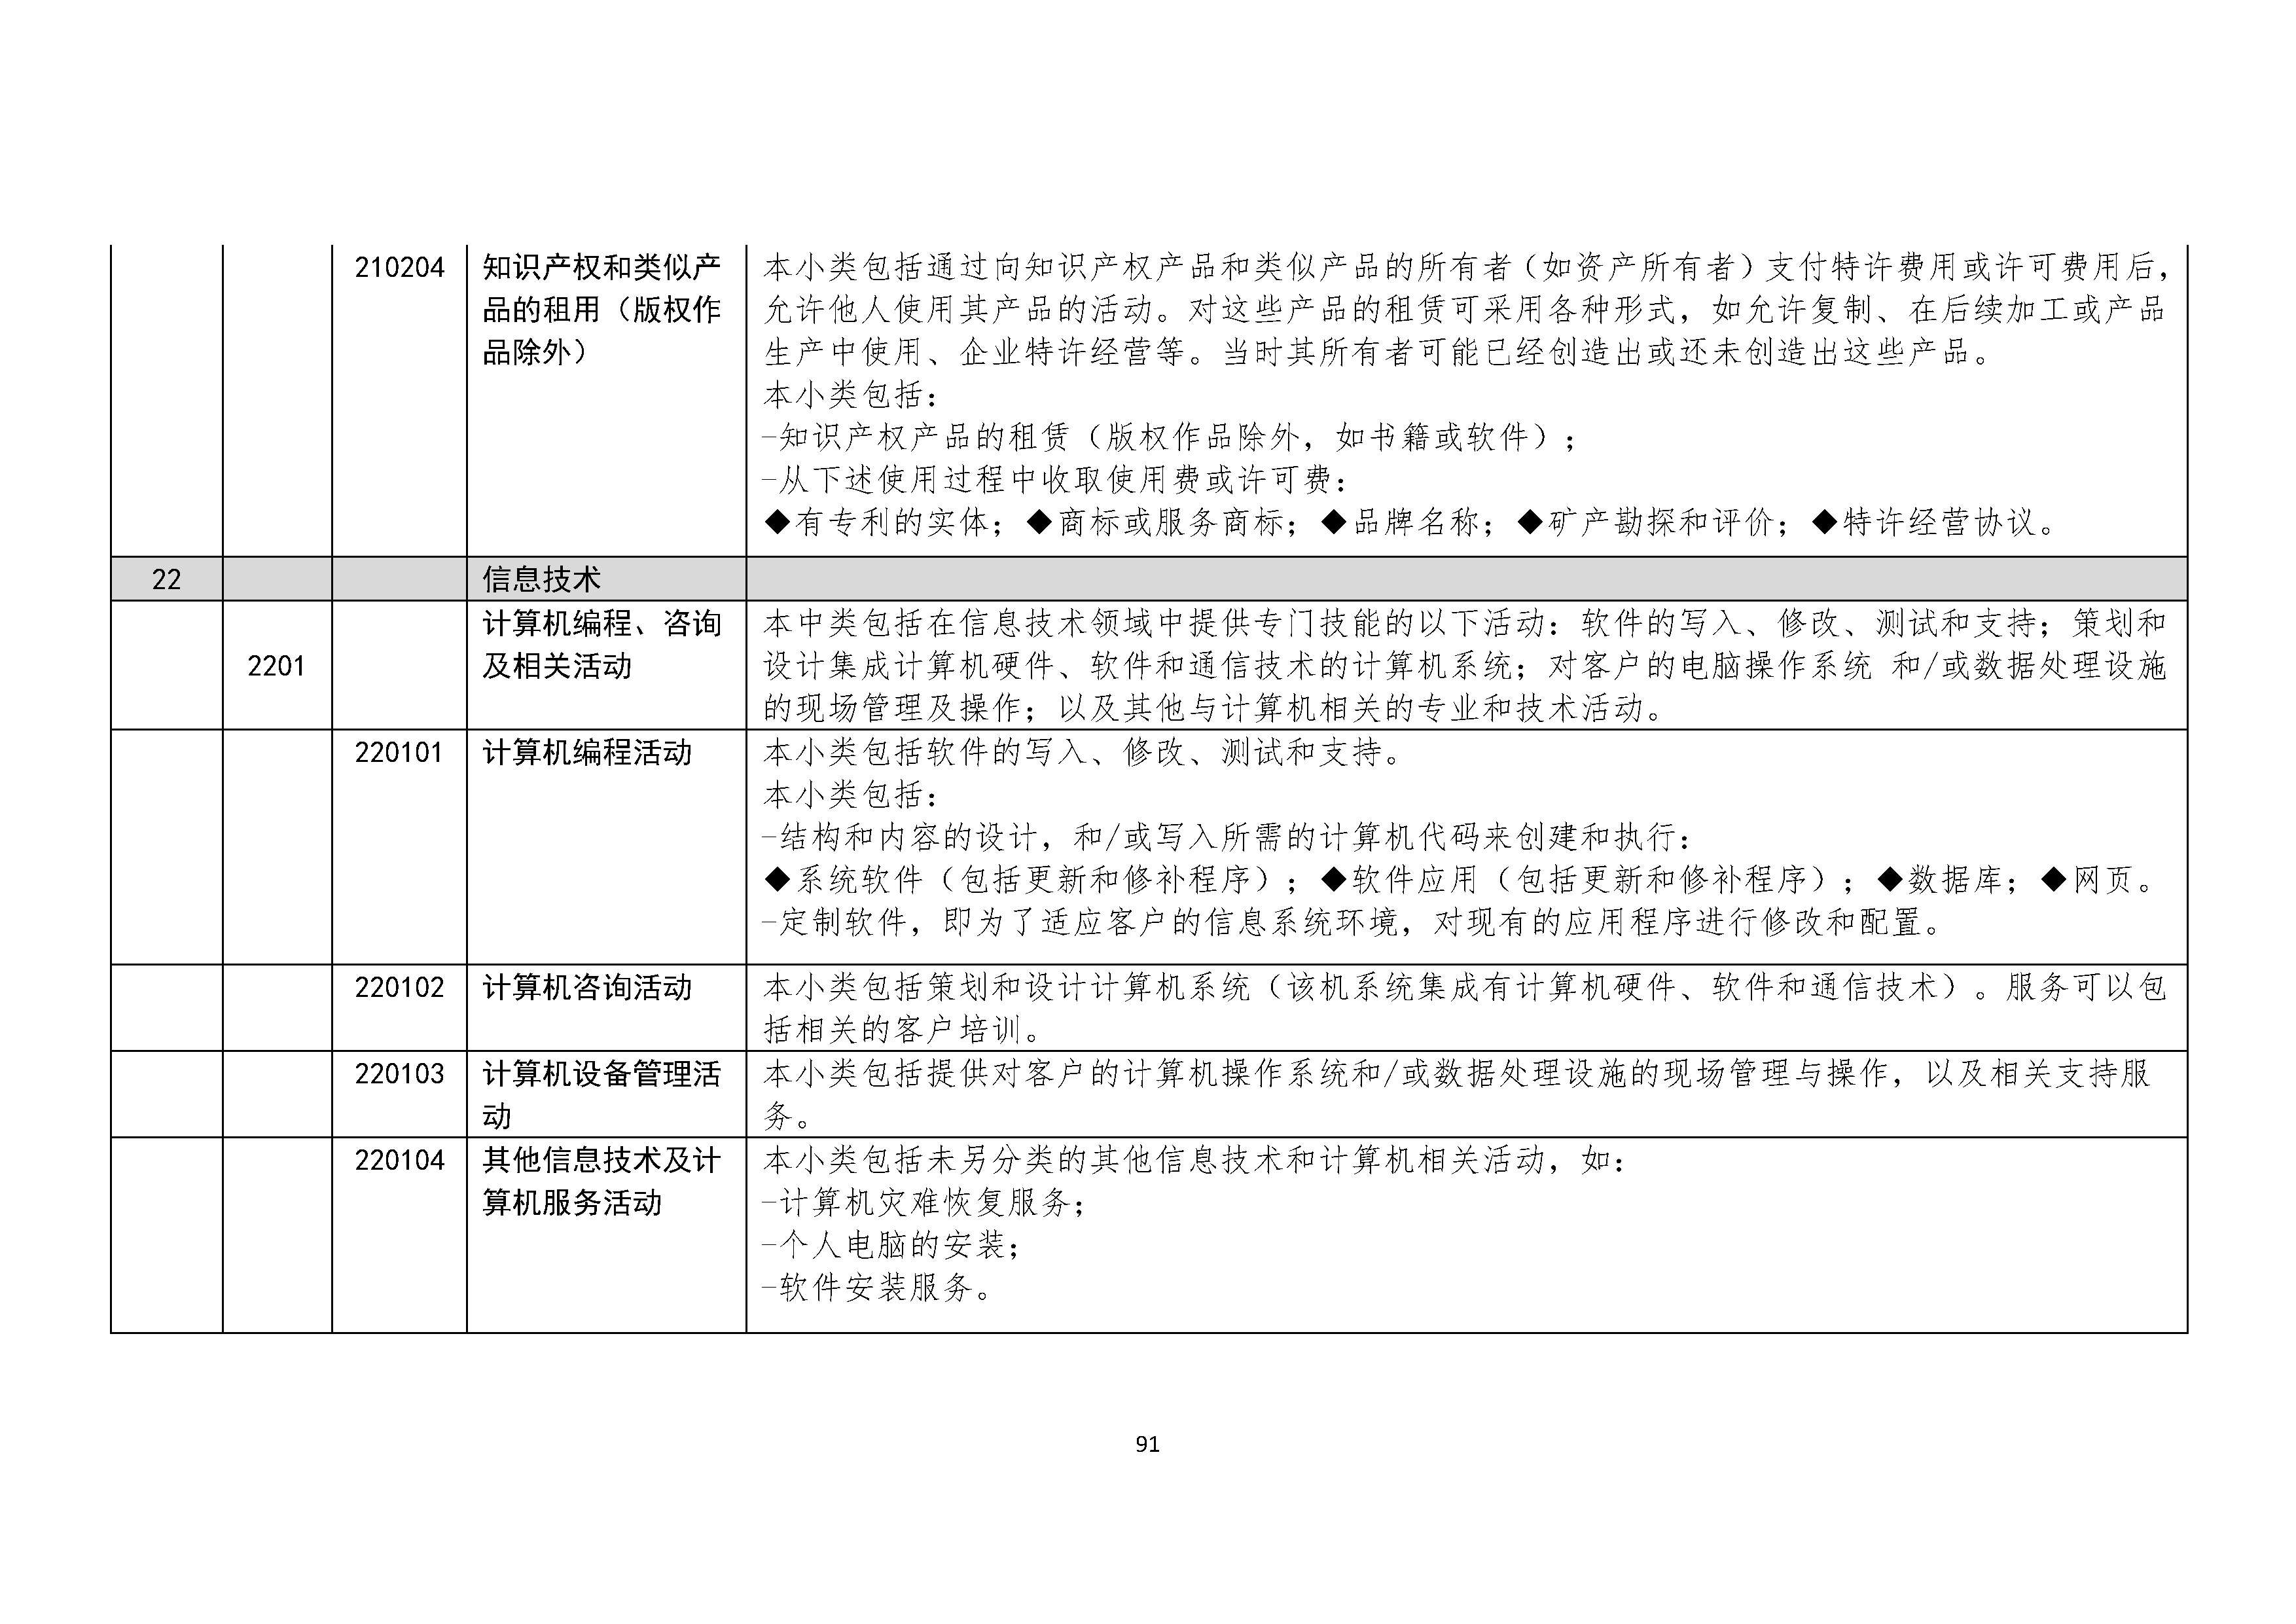 B.6《中国核能行业协会供应商评价供应商分类及产品专业范围划分规定》_页面_092.png